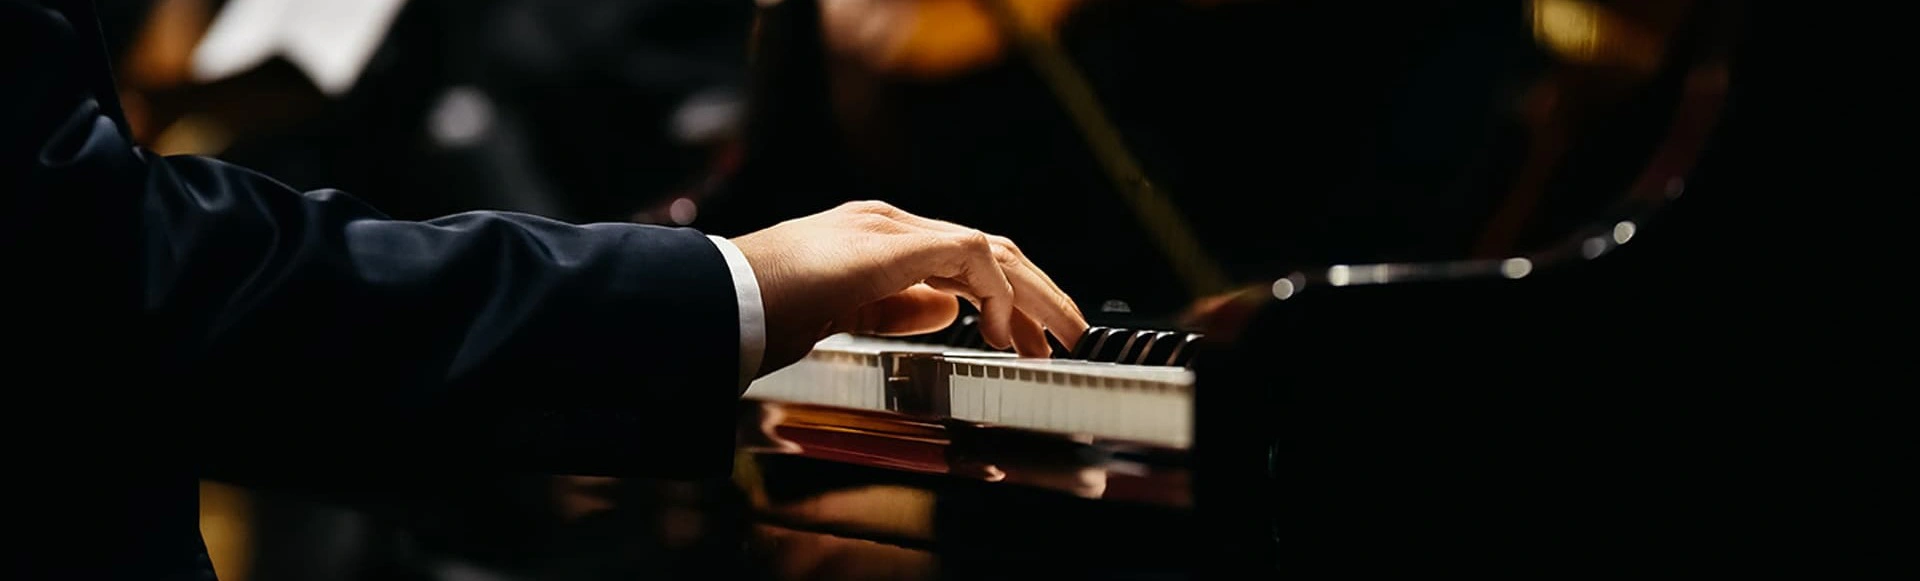 Два фортепианных концерта Бориса Березовского
